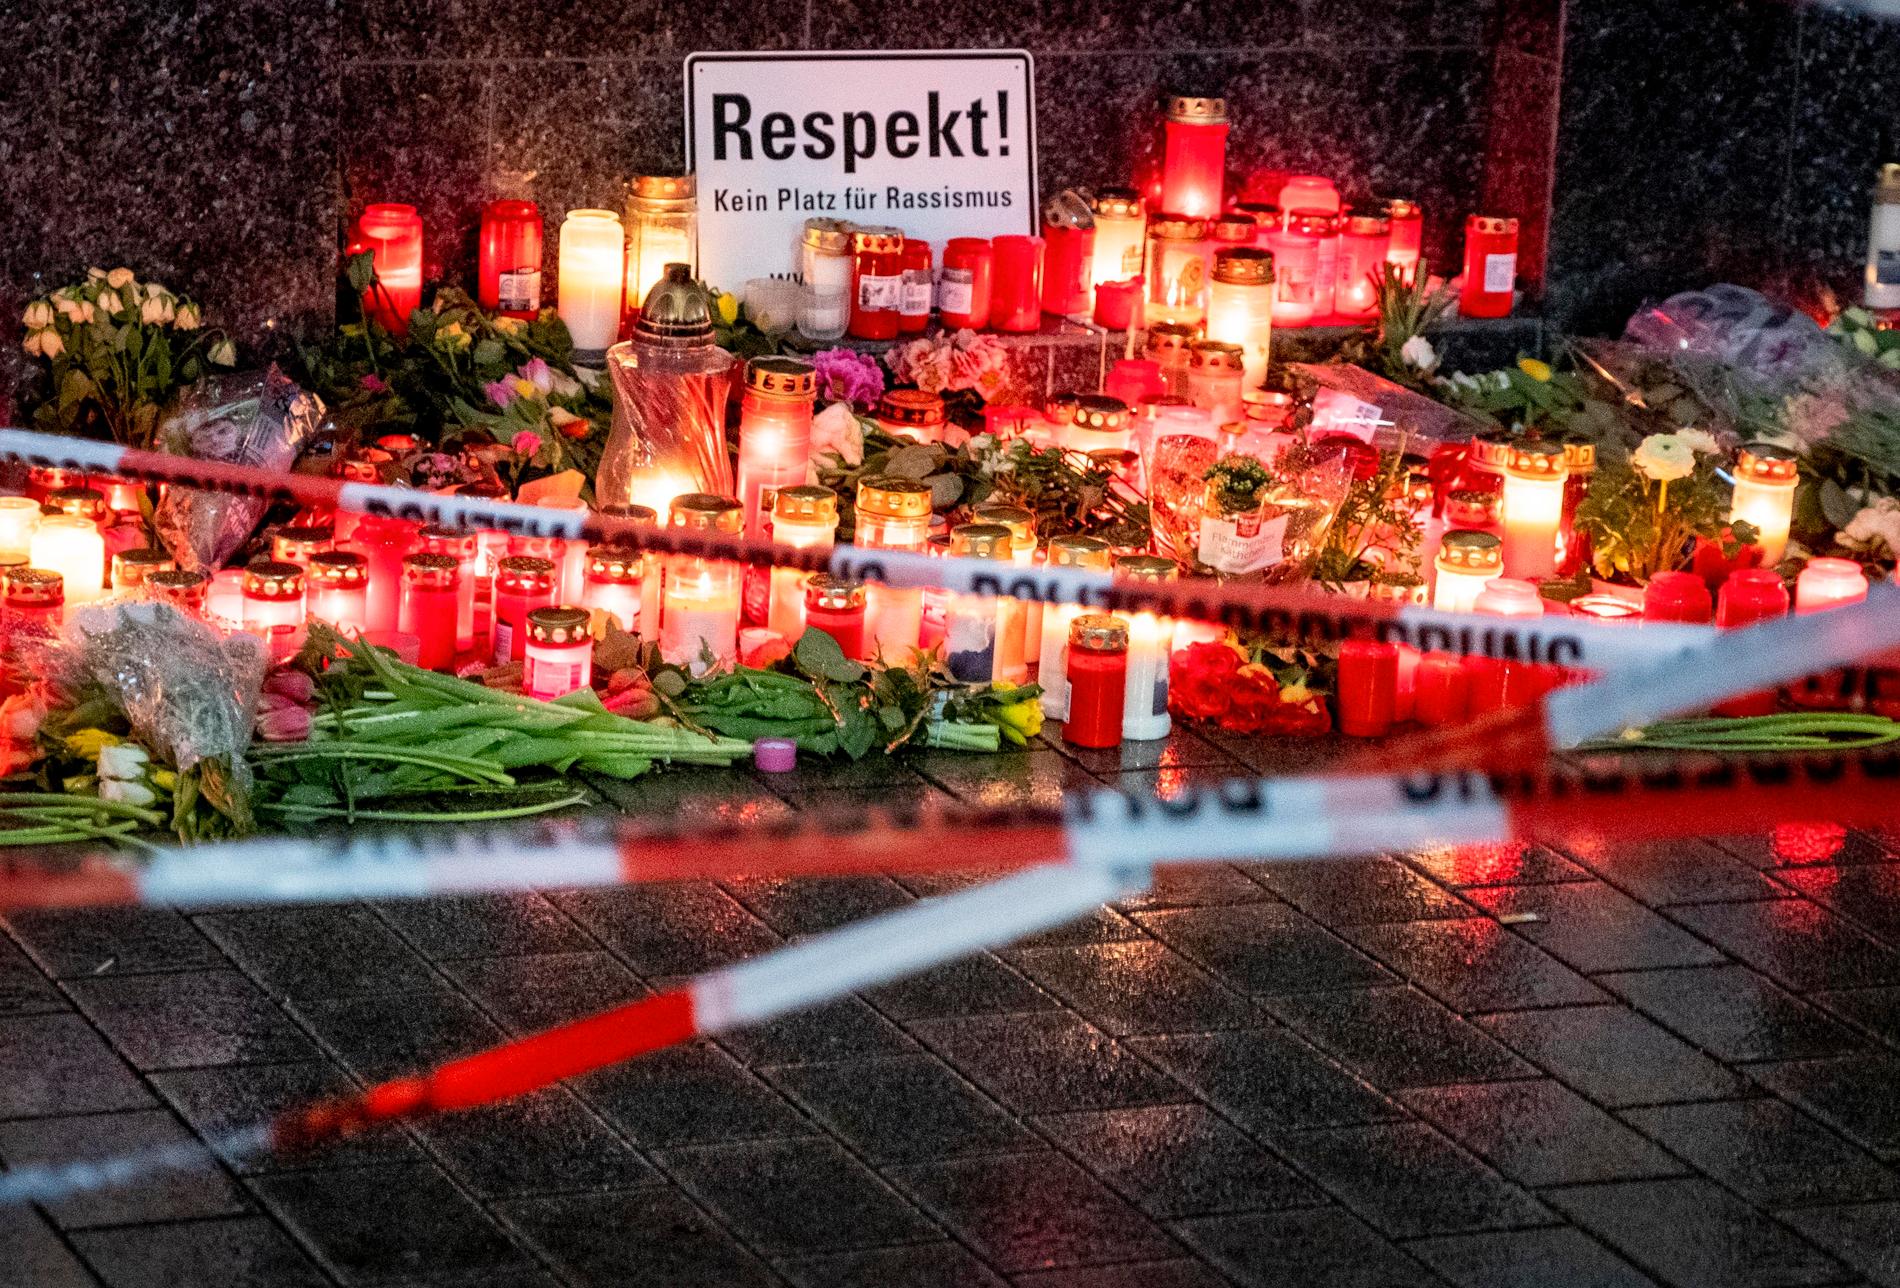 Sörjande har tänt ljus vid en bar där flera personer sköts ihjäl i Hanau tidigare i veckan.